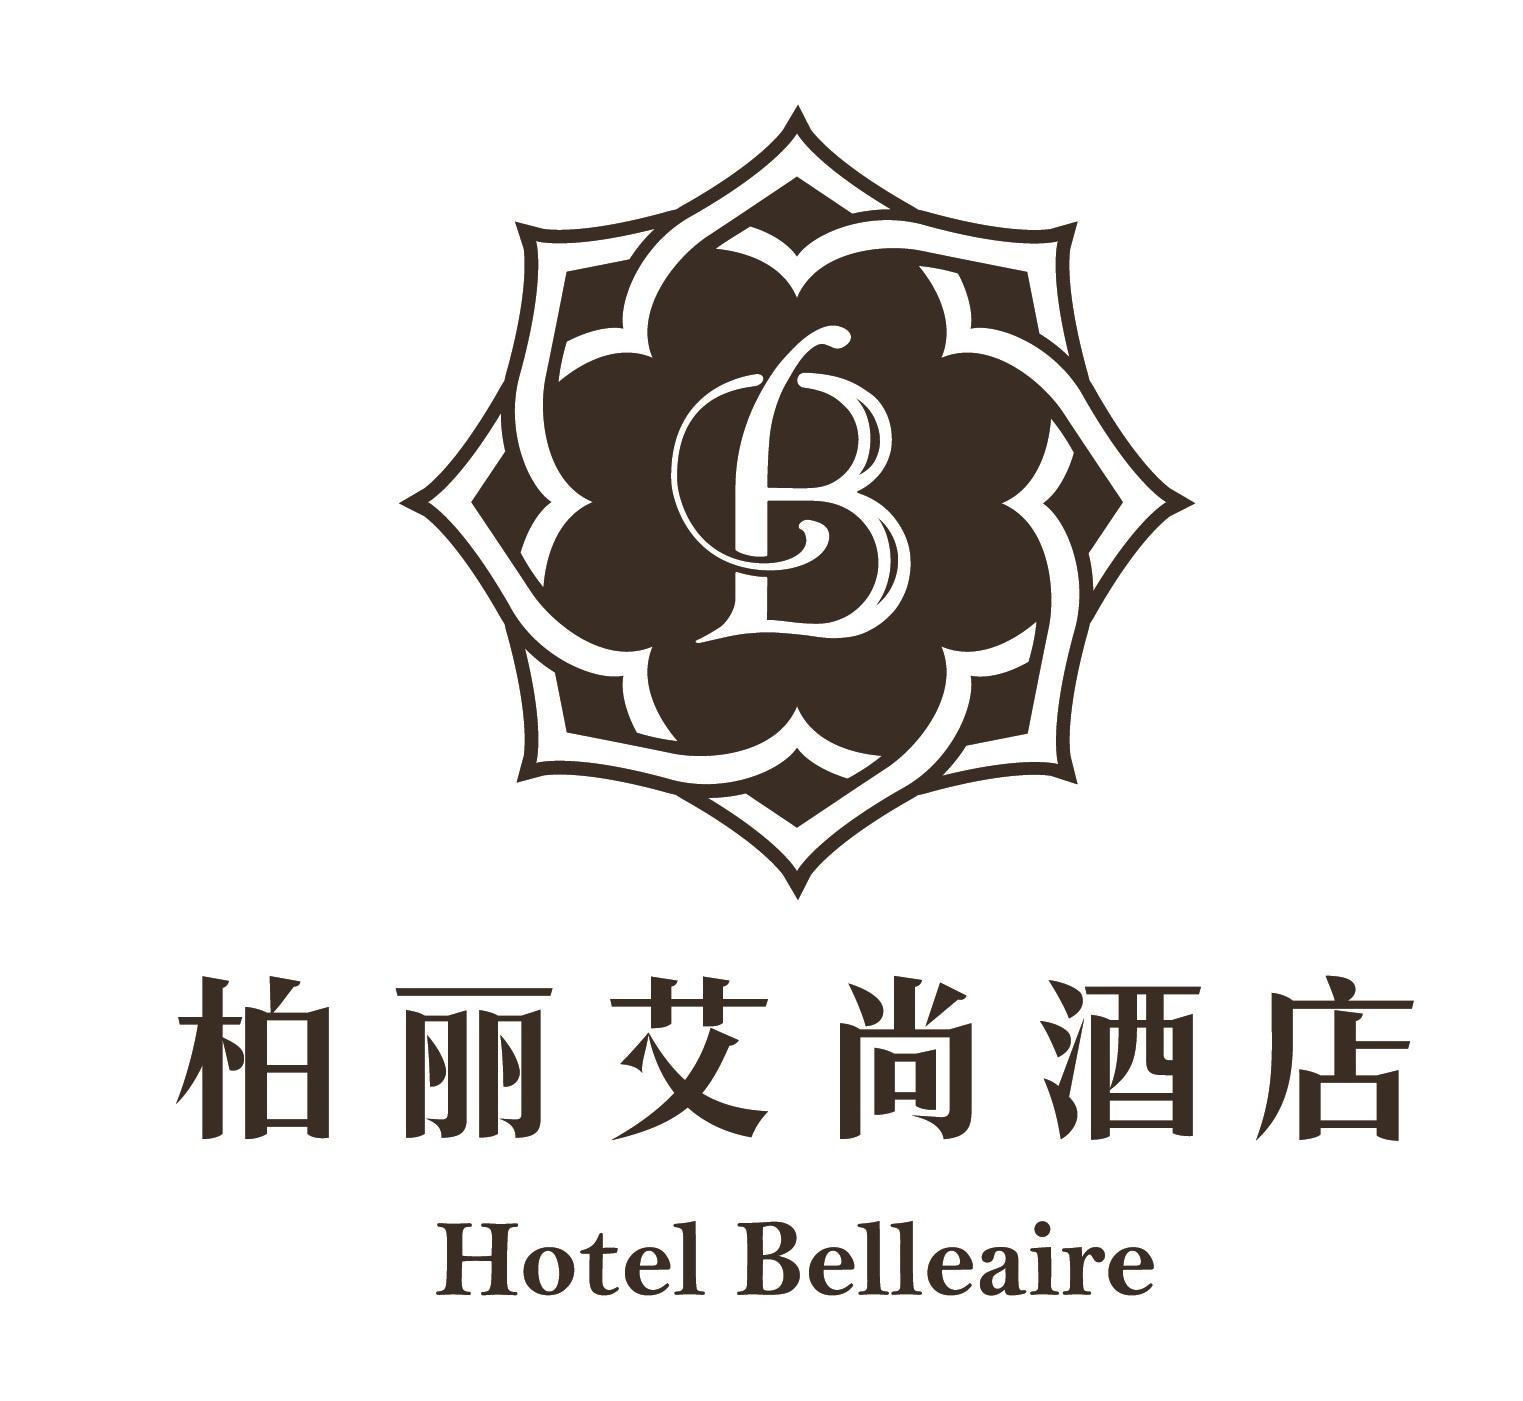 商标文字柏丽艾尚酒店 hotel belleaire b商标注册号